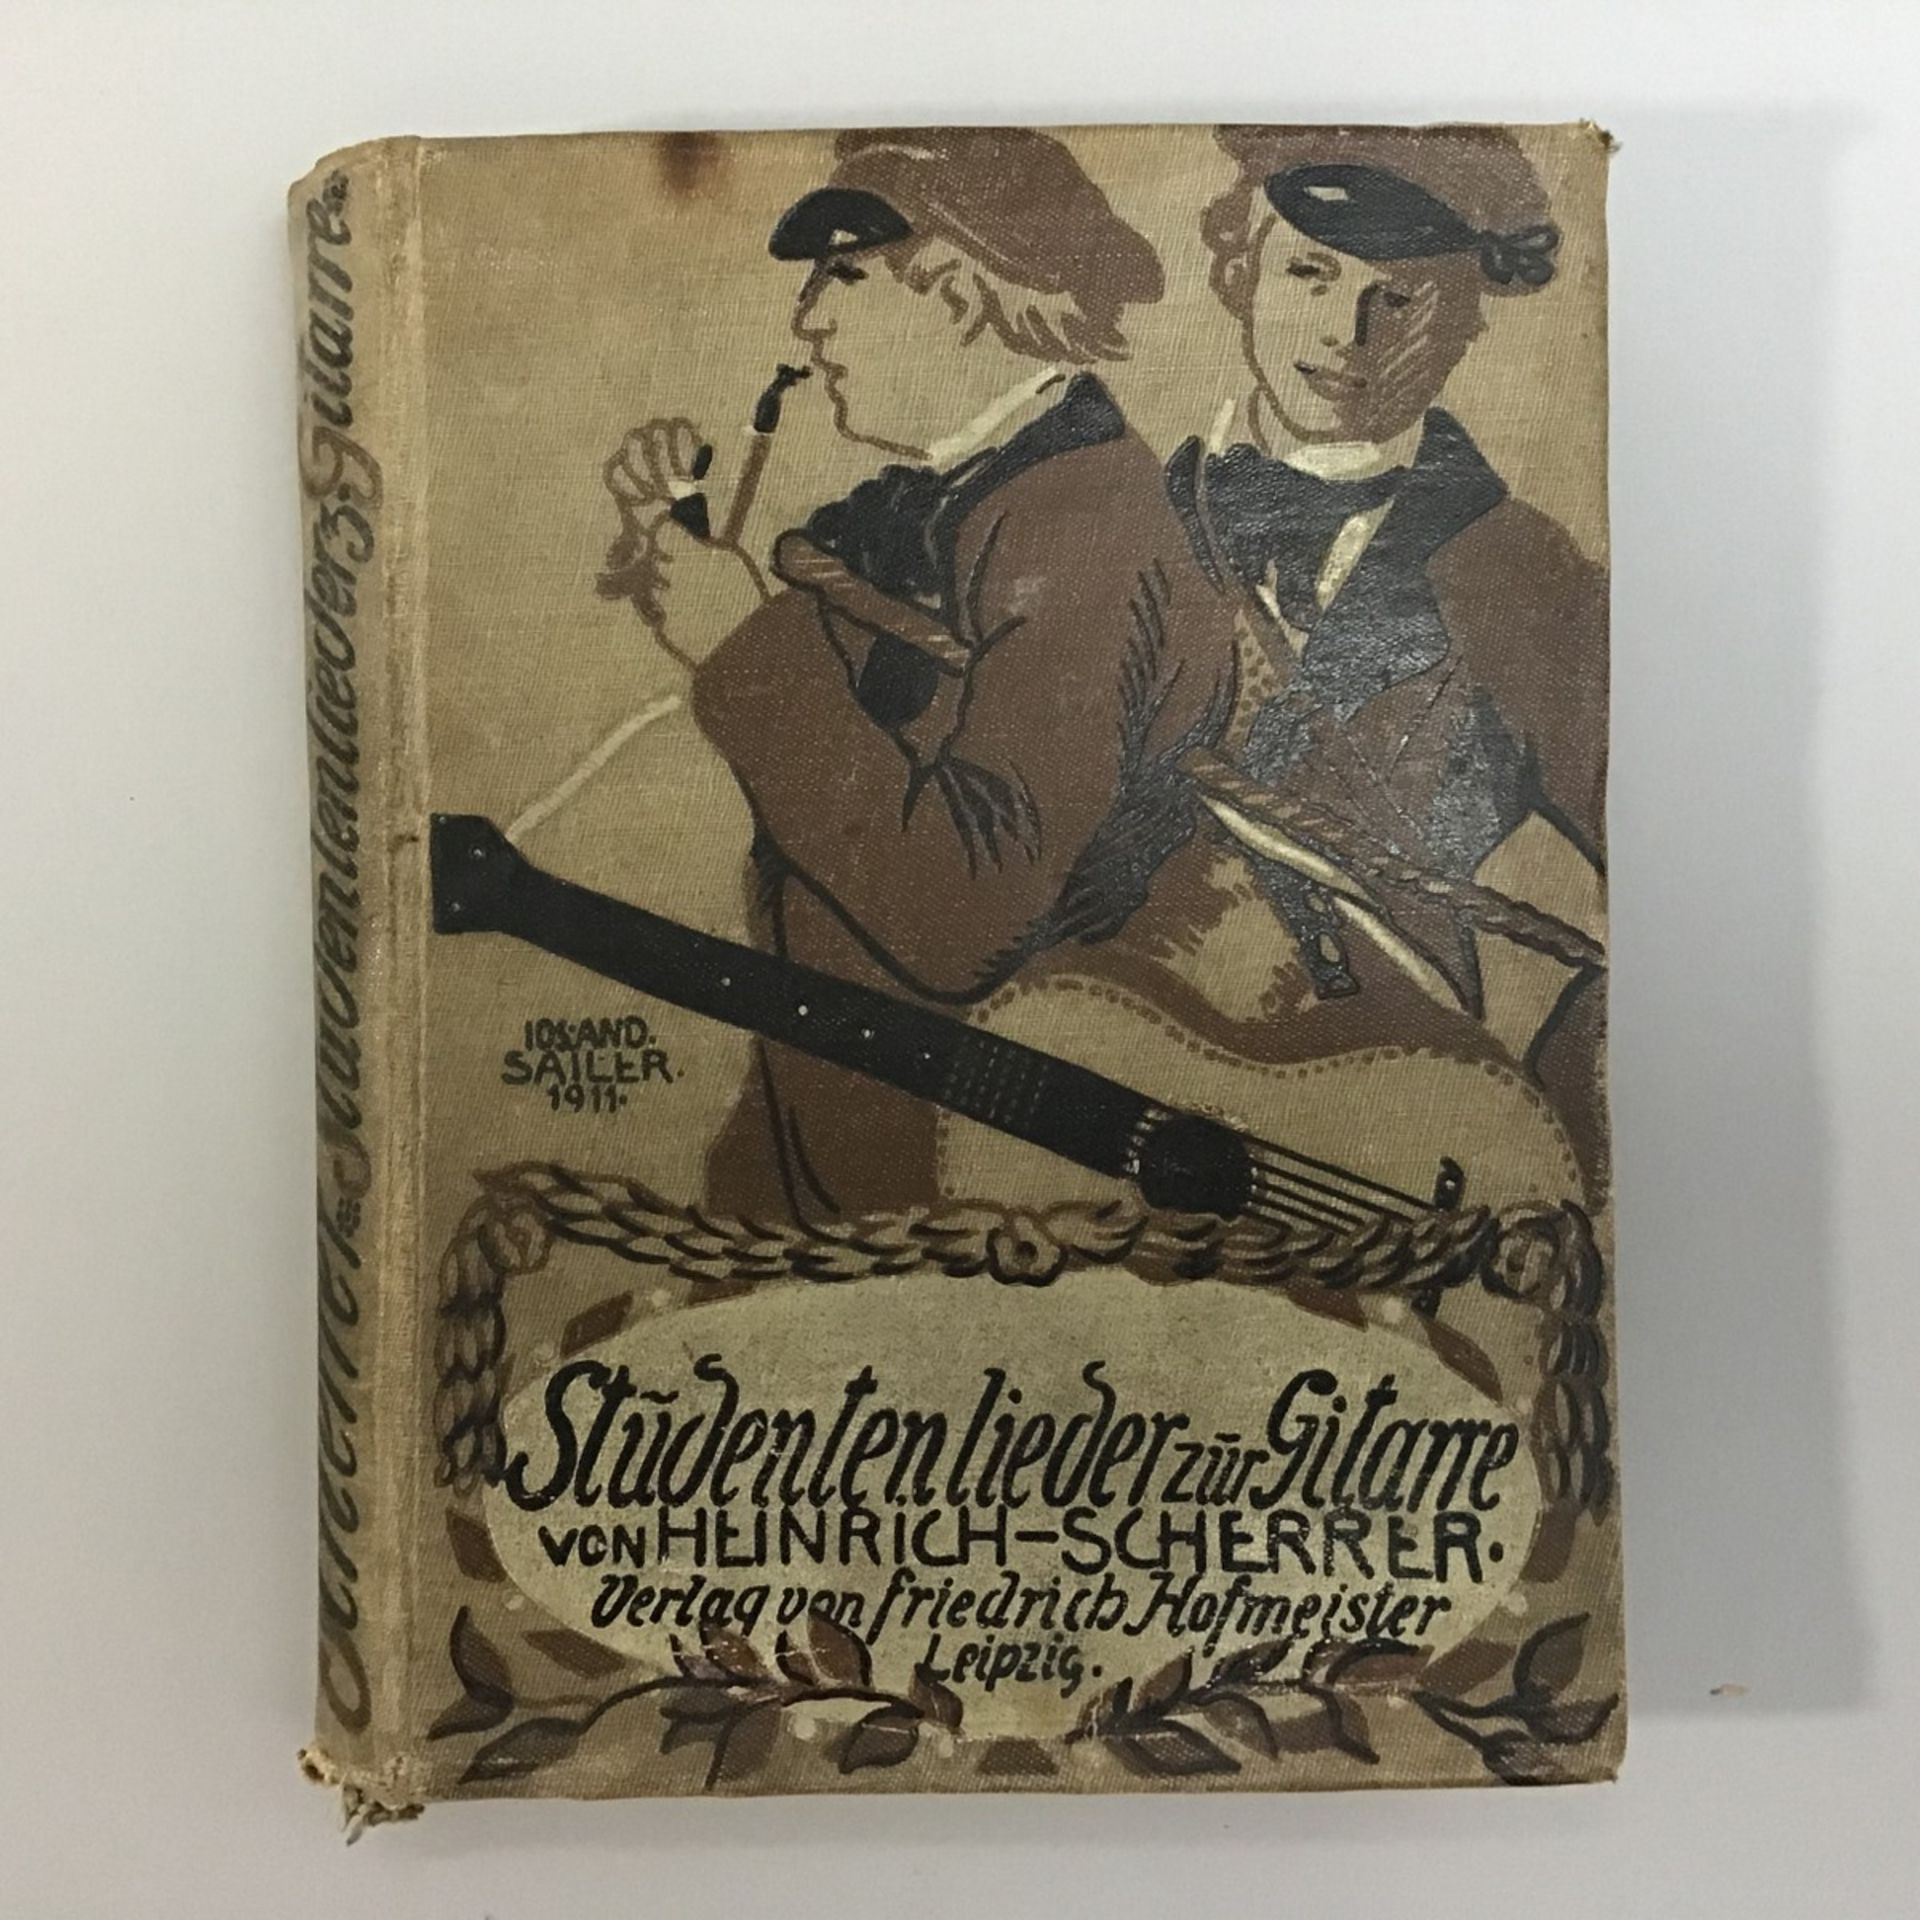 Studentenlieder zur Gitarre von Heinrich-Scherrer, Verlag von Friedrich Hofmeister, Leipzig 1916,